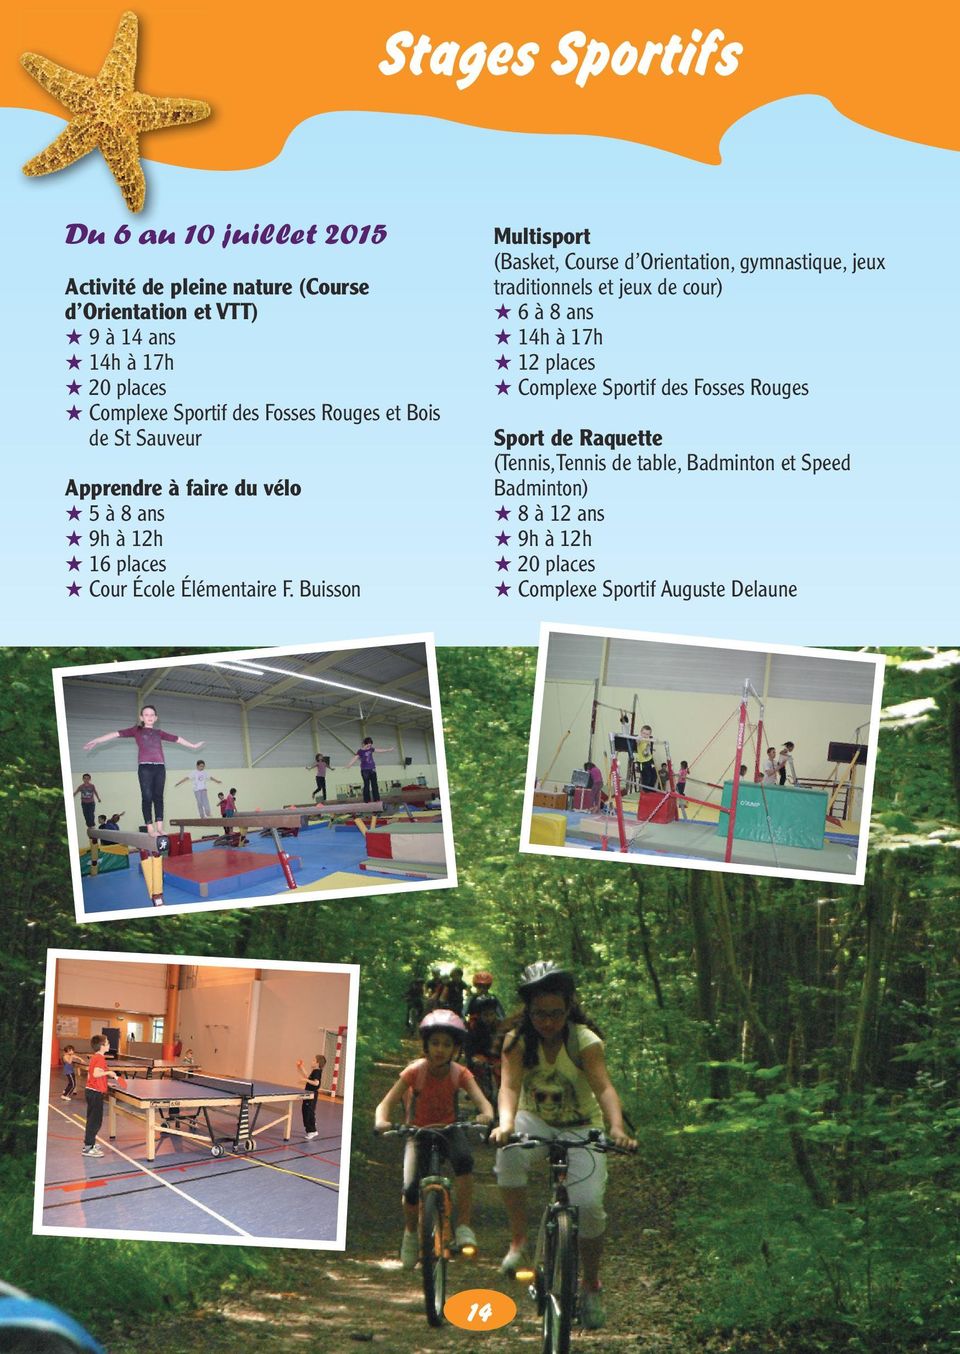 Complexe Sportif des Fosses Rouges et Bois de St Sauveur Sport de Raquette (Tennis, Tennis de table, Badminton et Speed Badminton) 8 à 12 ans